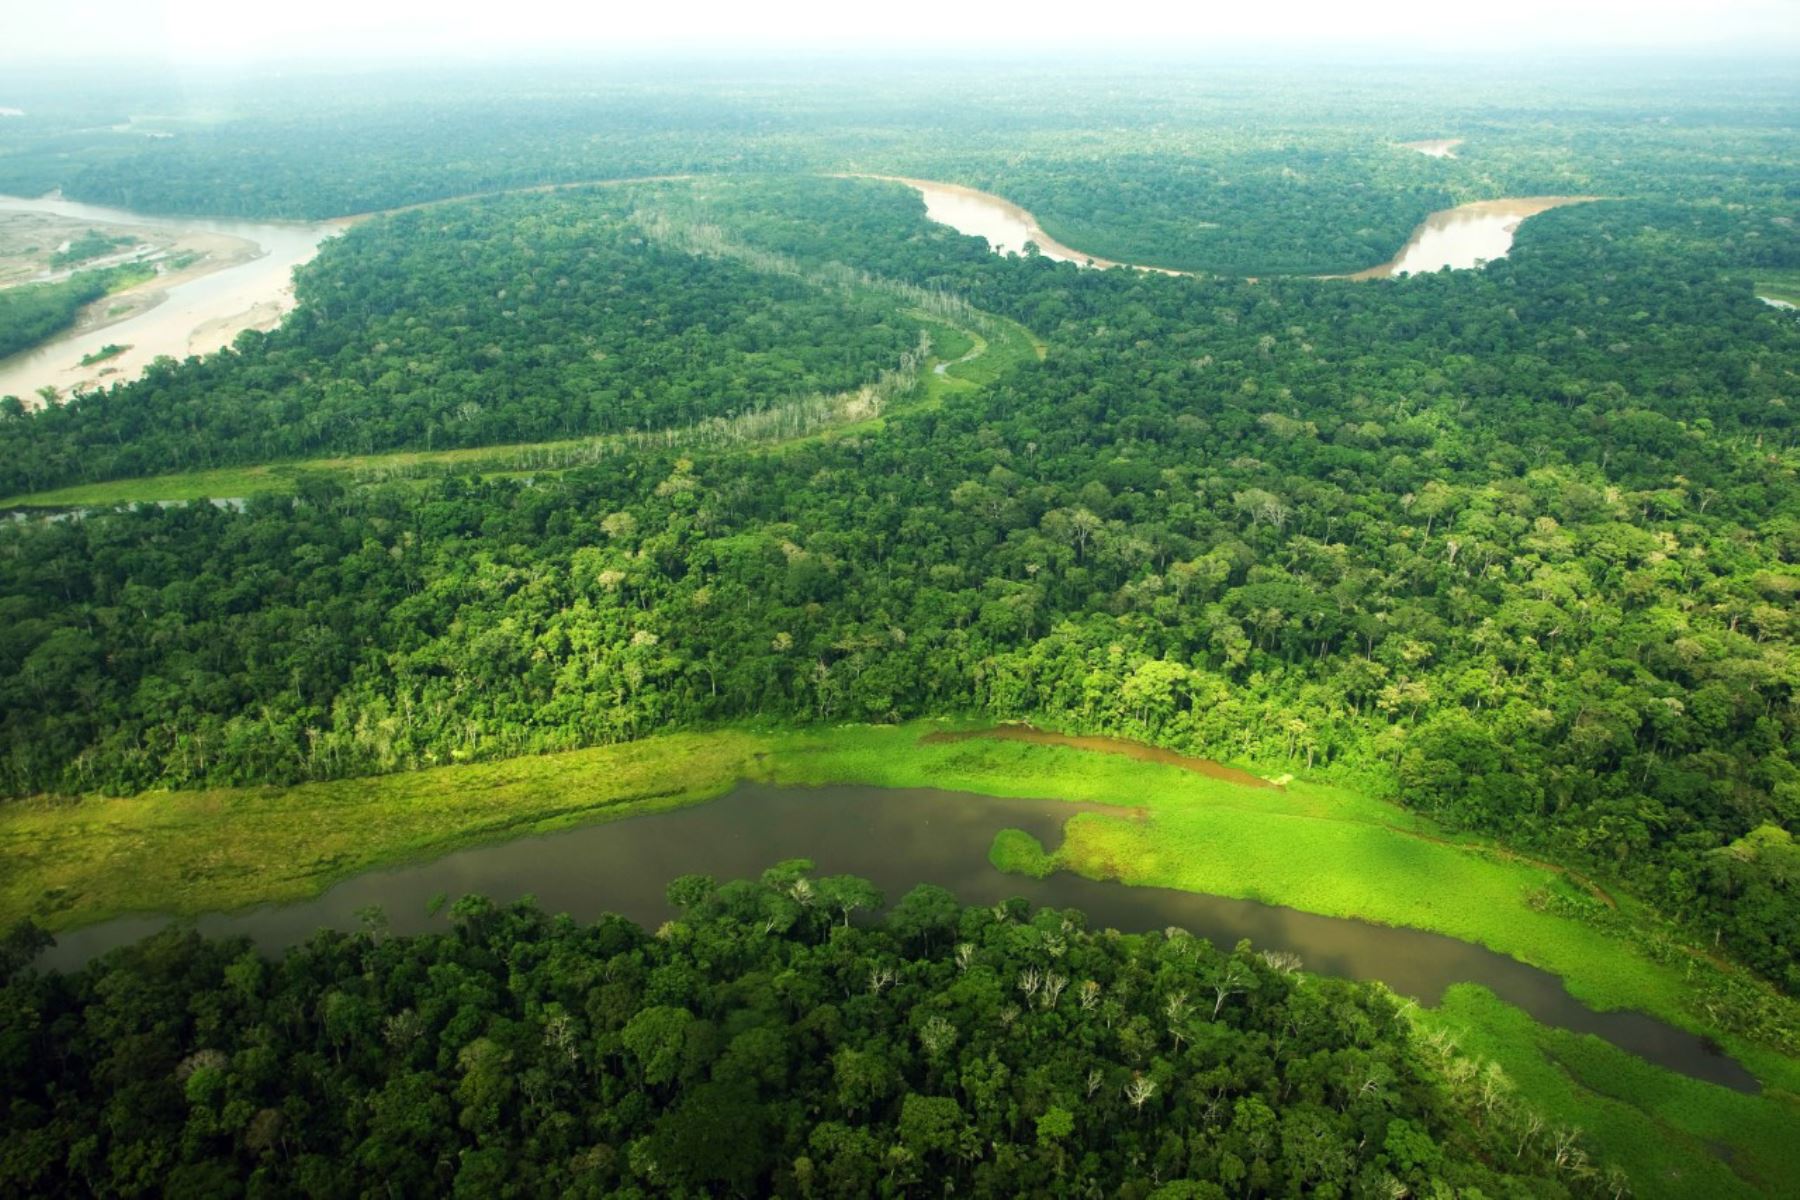 Gobiernos regionales amazónicos avanzan en zonificación forestal de su territorio